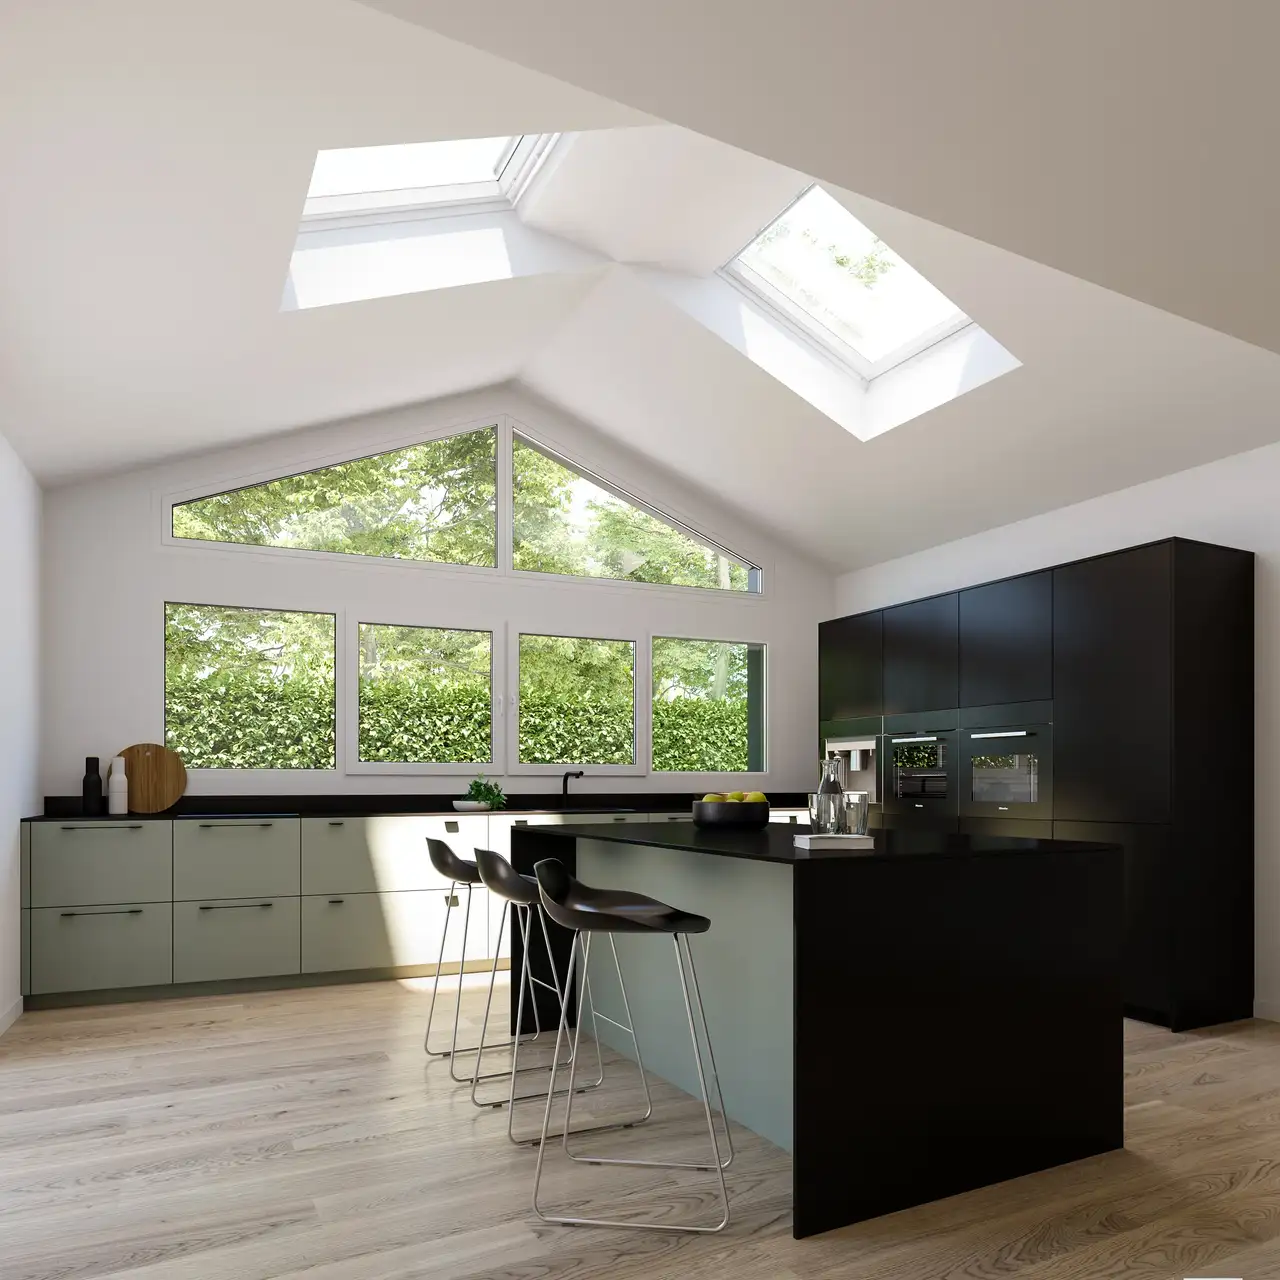 Moderne Küche mit VELUX Dachflächenfenster und grüner Aussicht durch große Fenster.